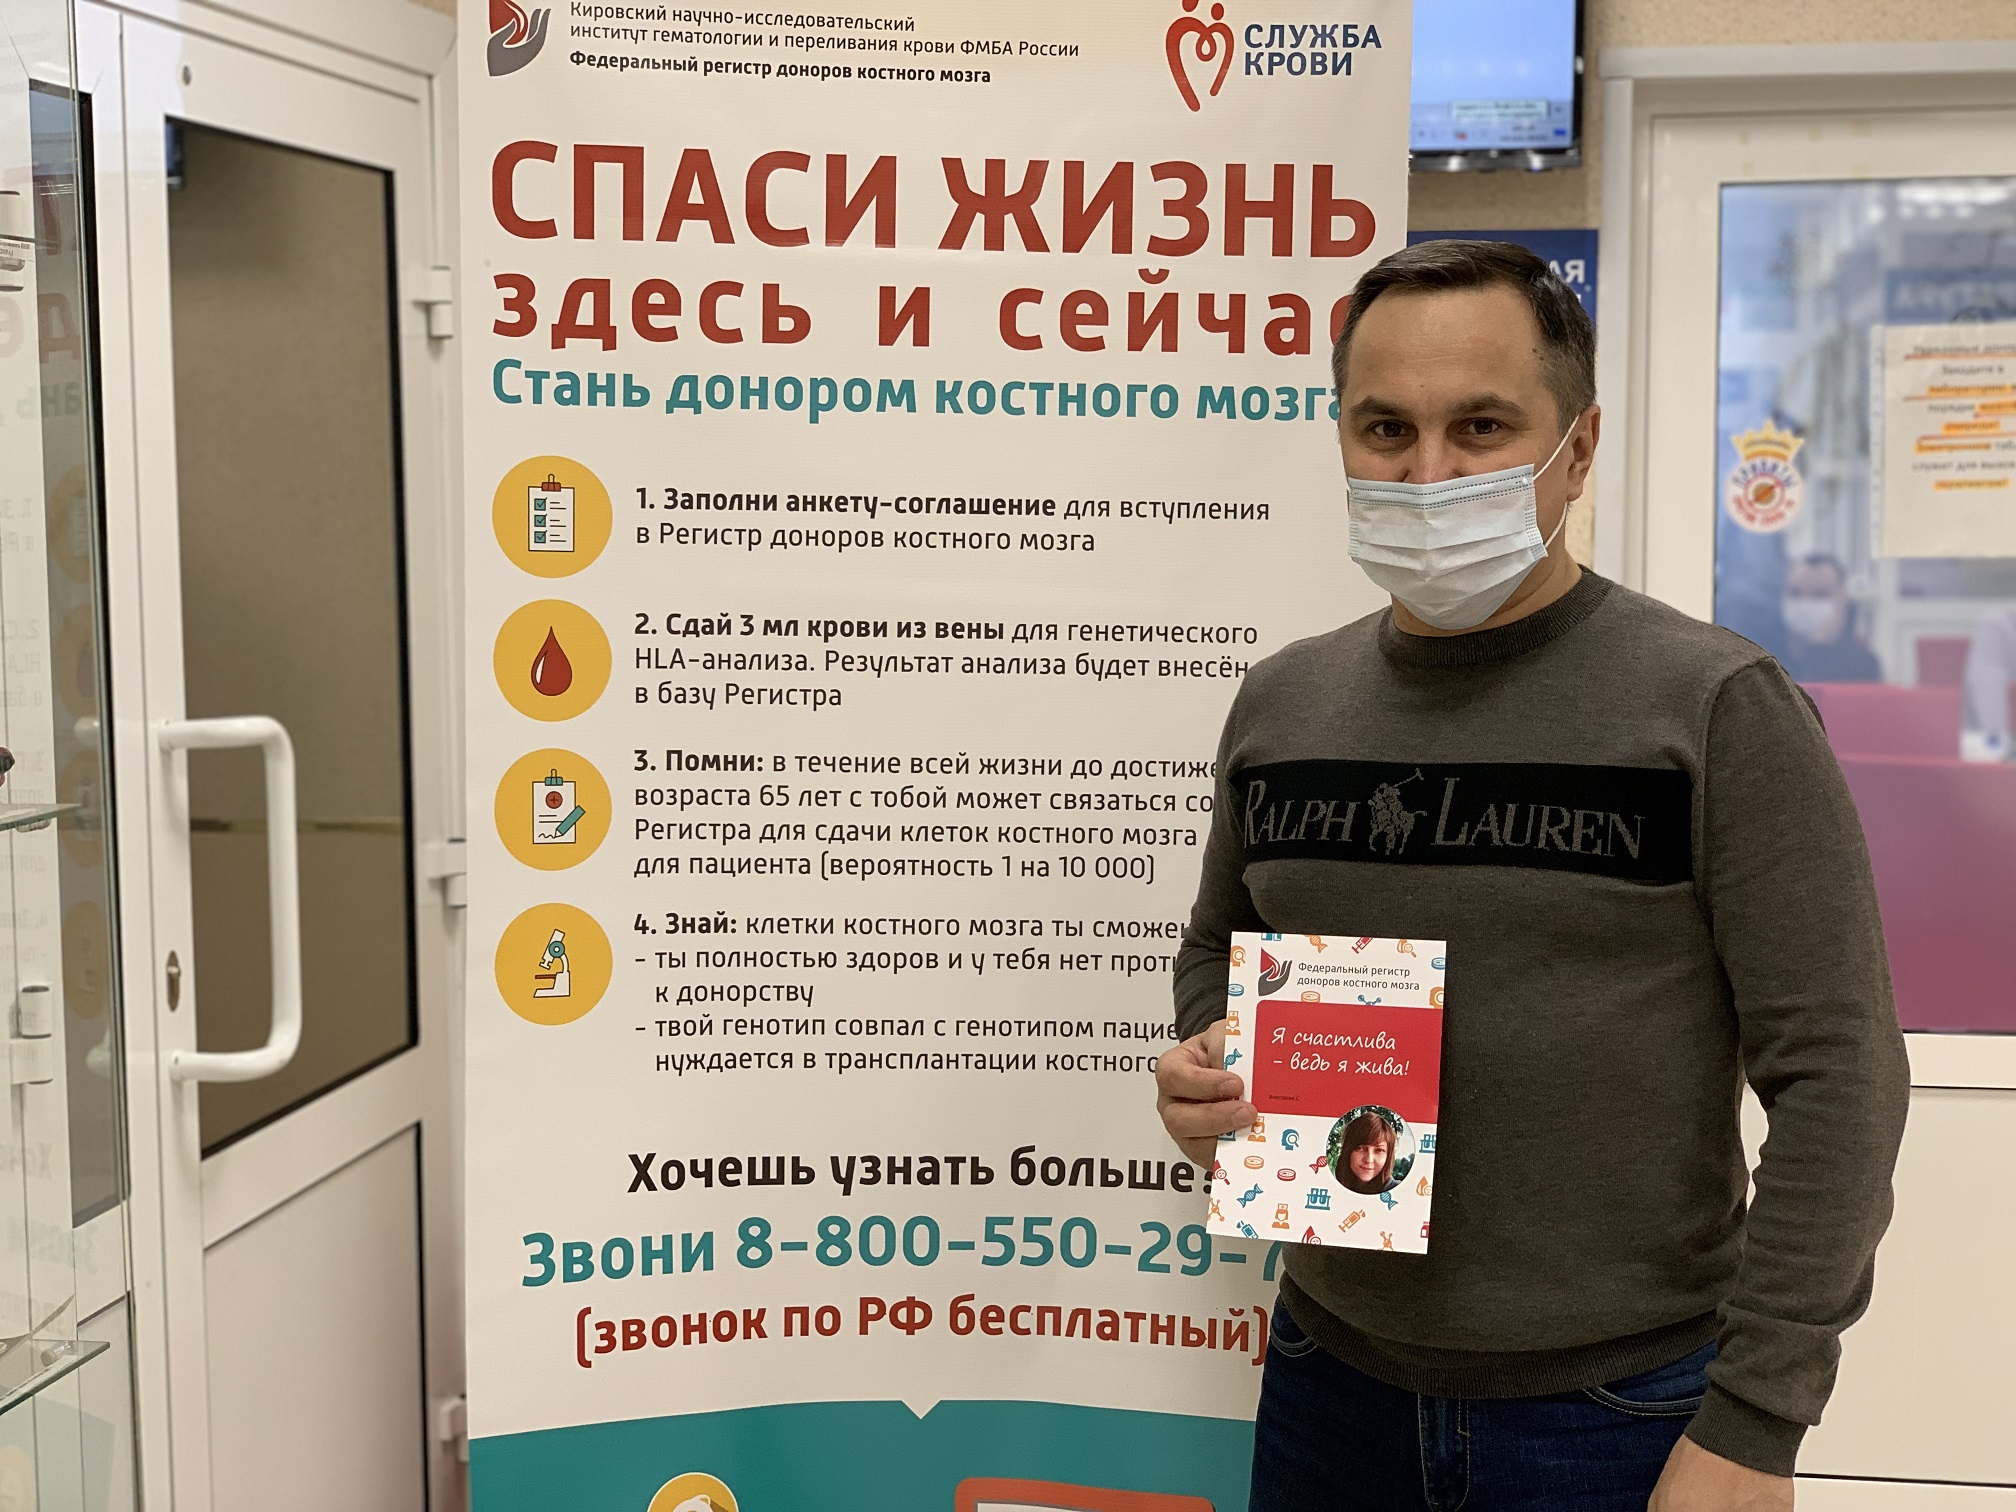 Больше 100 жителей Свердловской области вступили в Федеральный регистр доноров костного мозга